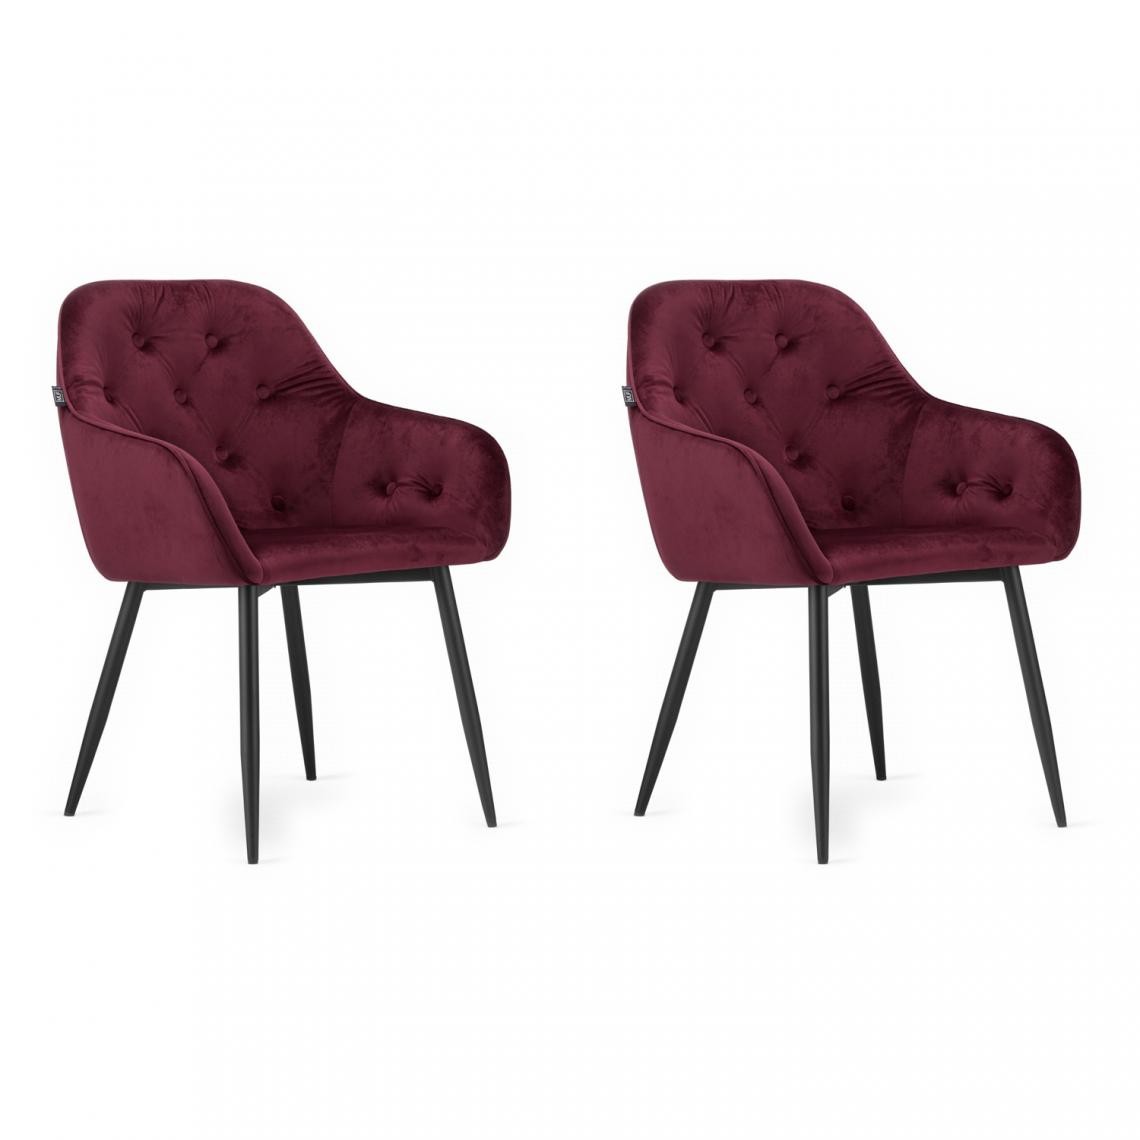 Hucoco - FORTO - Lot de 2 chaises style glamour salon/salle à manger - 81x55.5x61 cm - Fauteuil de table en velours - Rouge - Chaises